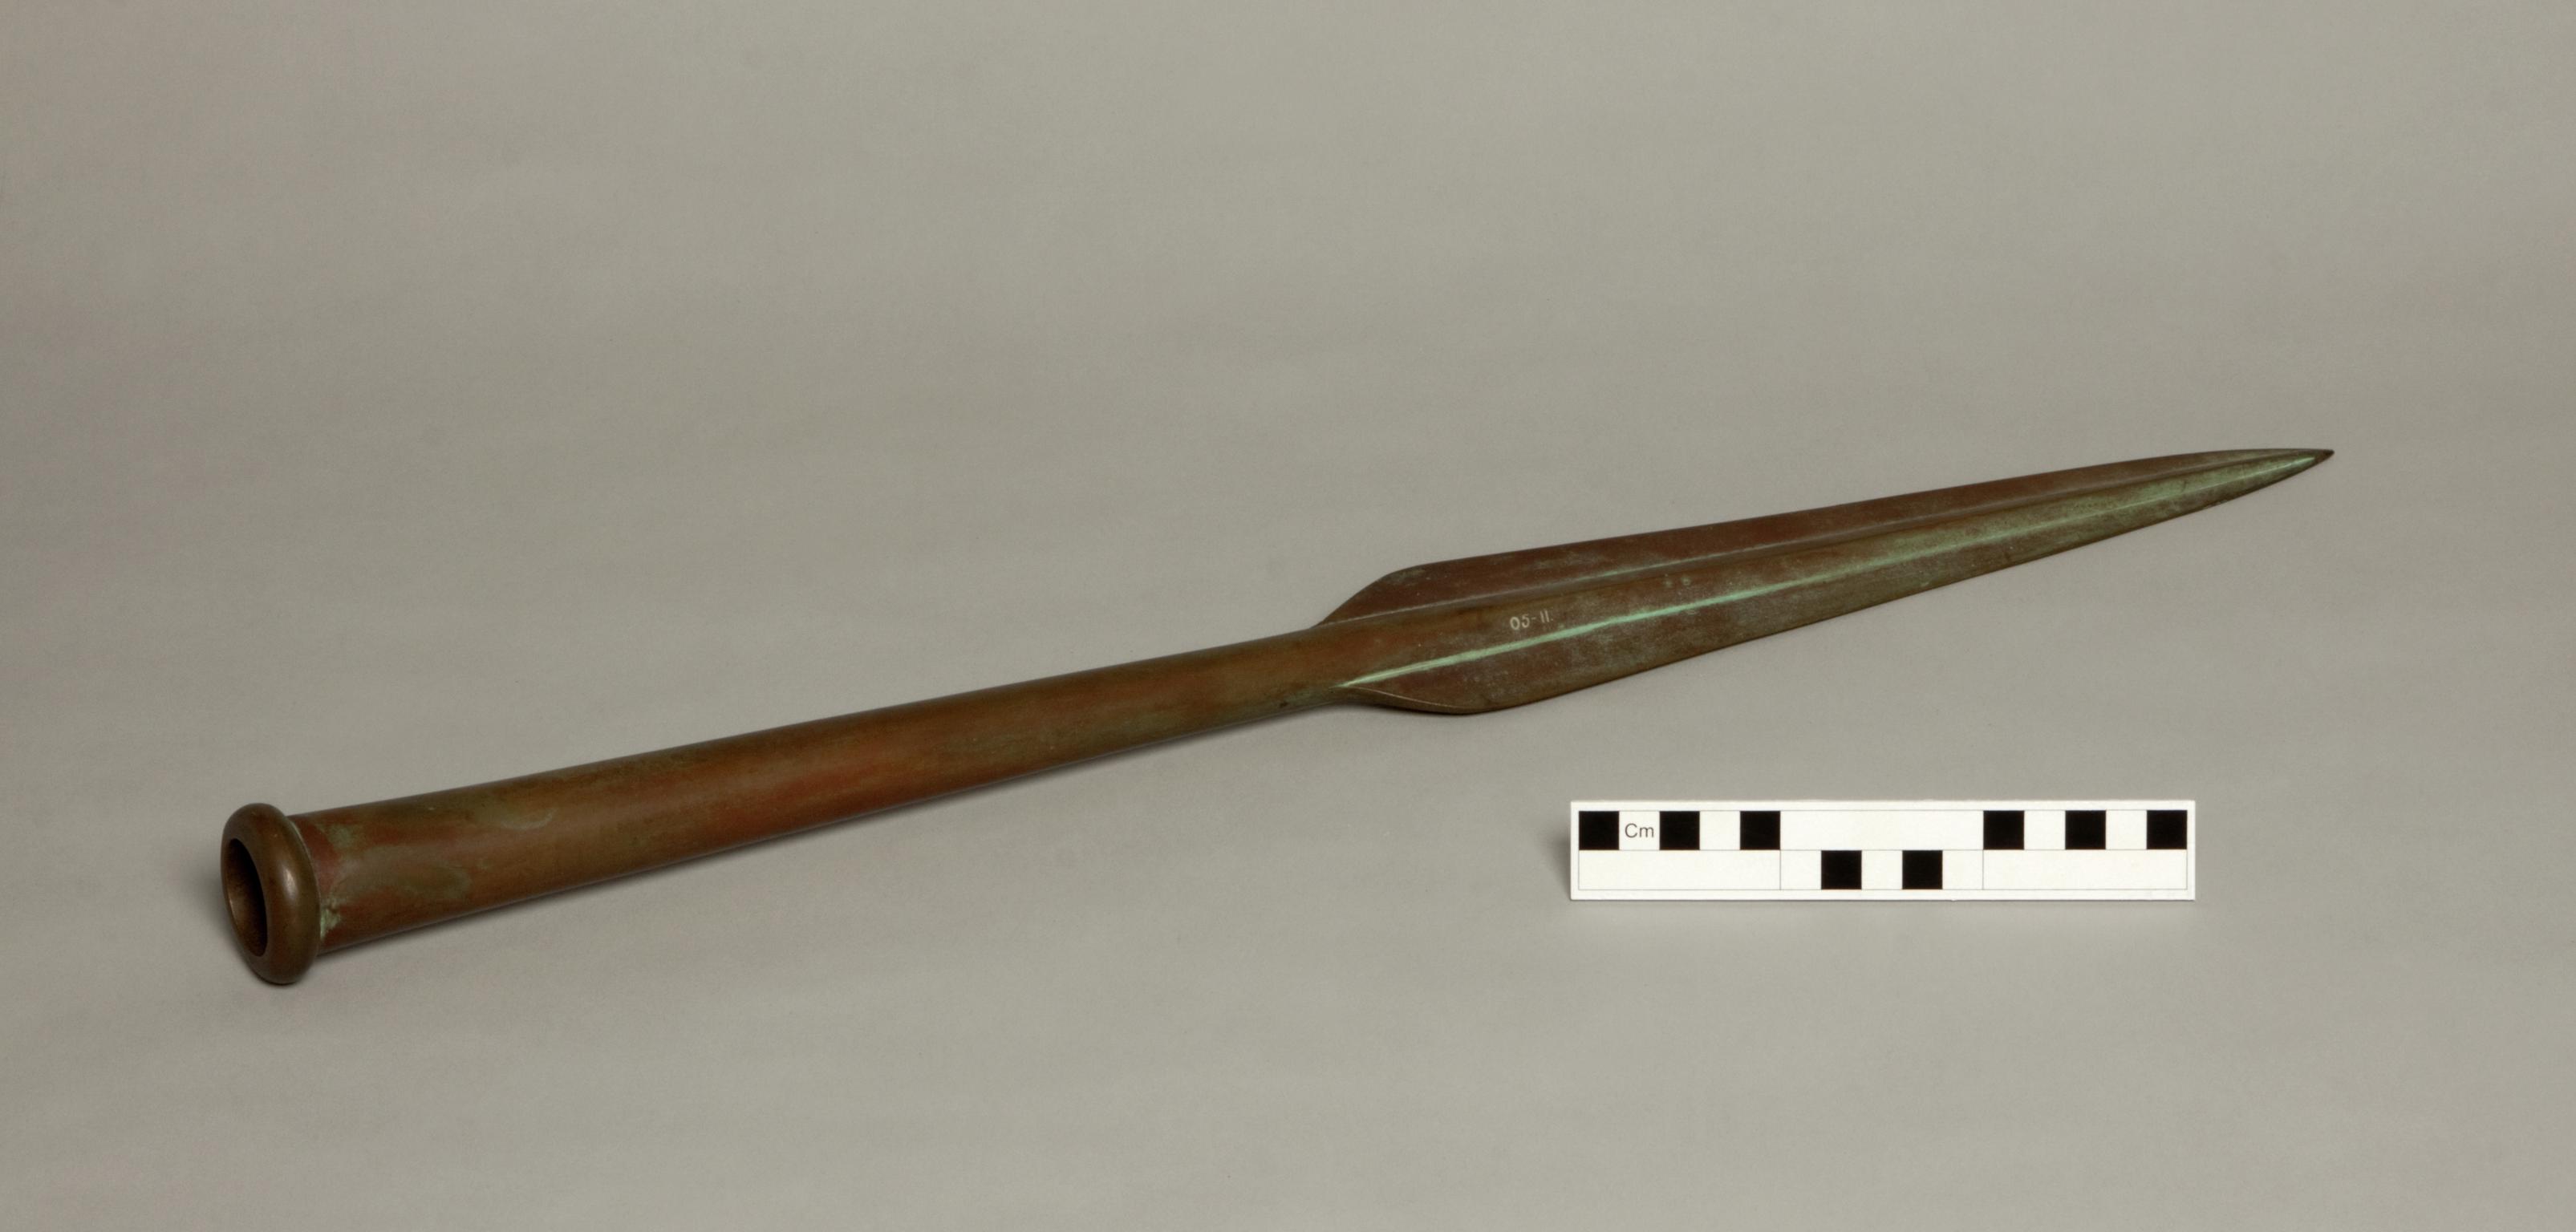 Mycenean copper alloy spearhead (Replica)